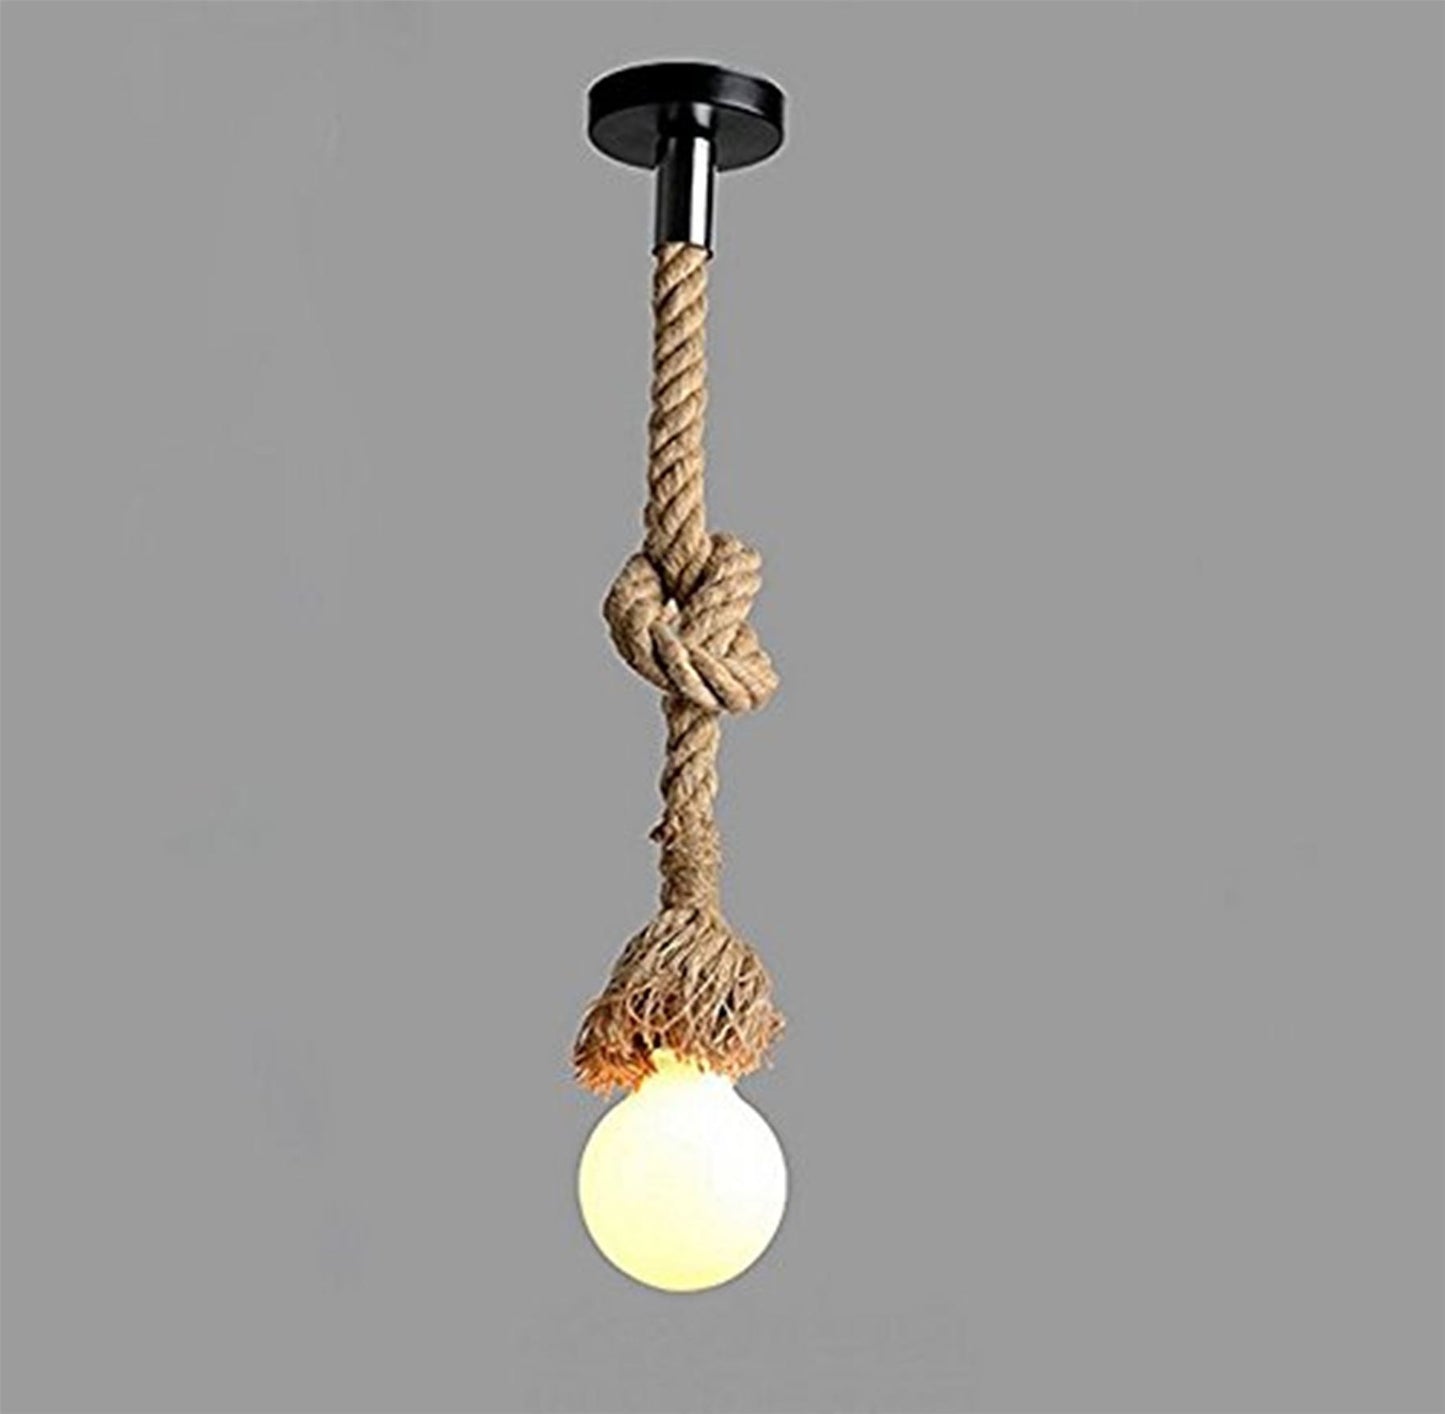 Hanfseil Deckenpendelleuchte Antique Daheim Decor Leuchte Vintage Lampe